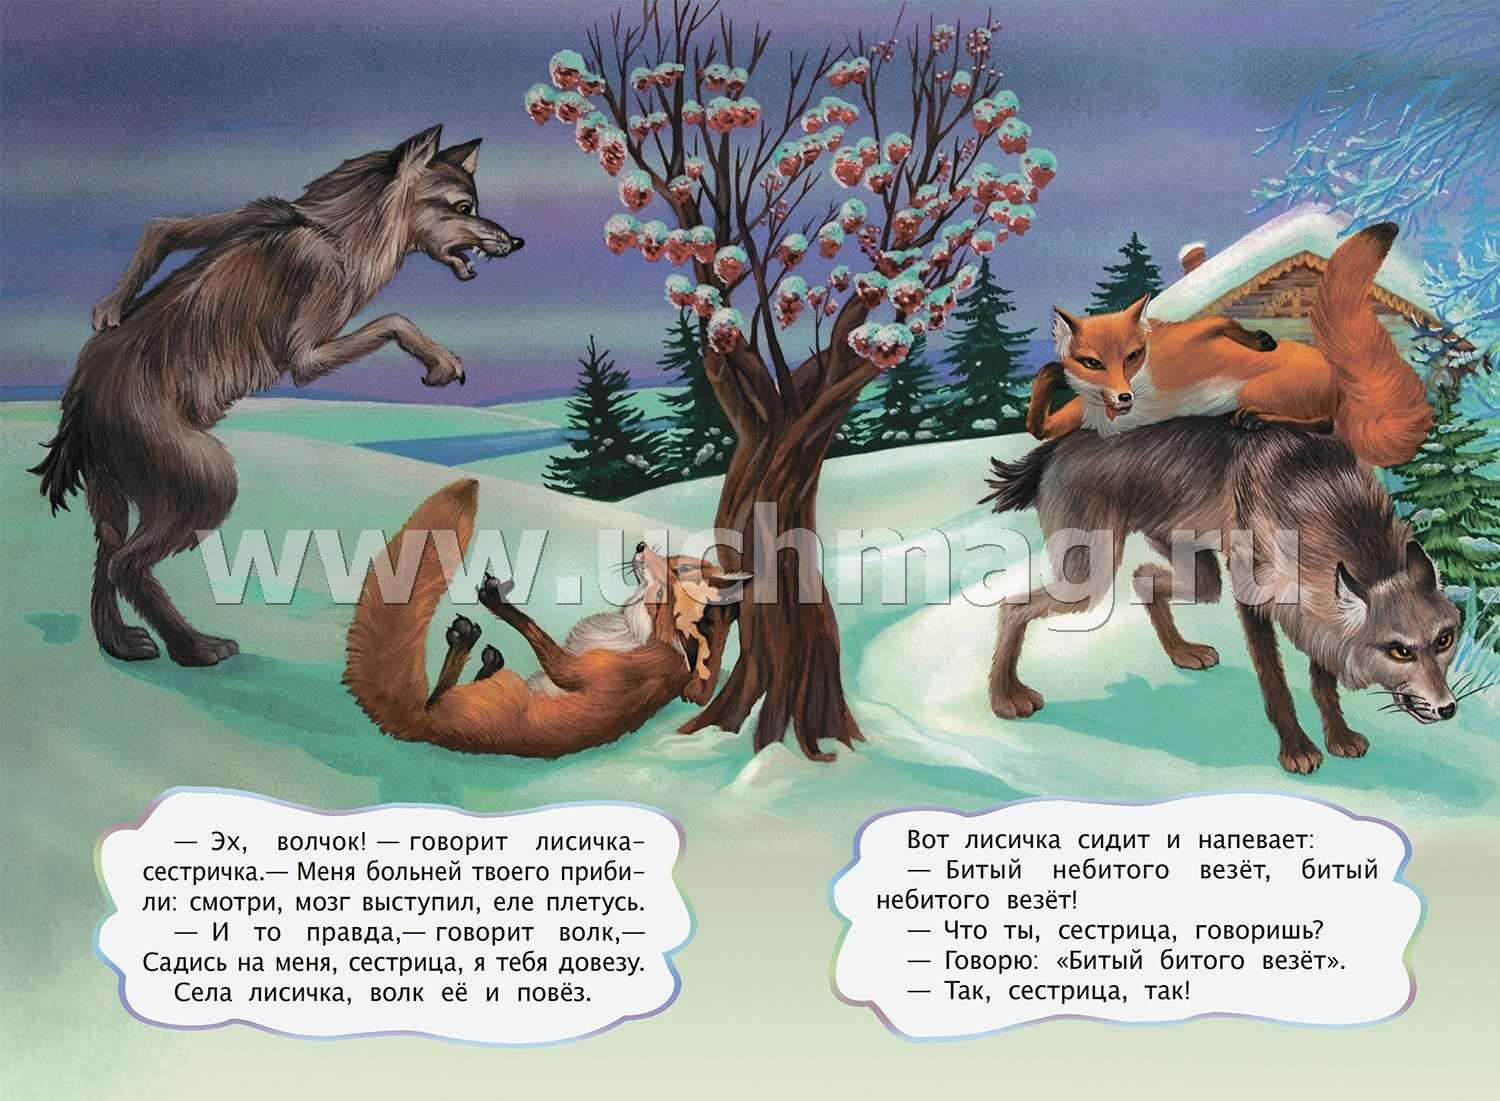 Энциклопедия сказочных героев: русская сказка "волк и лиса"